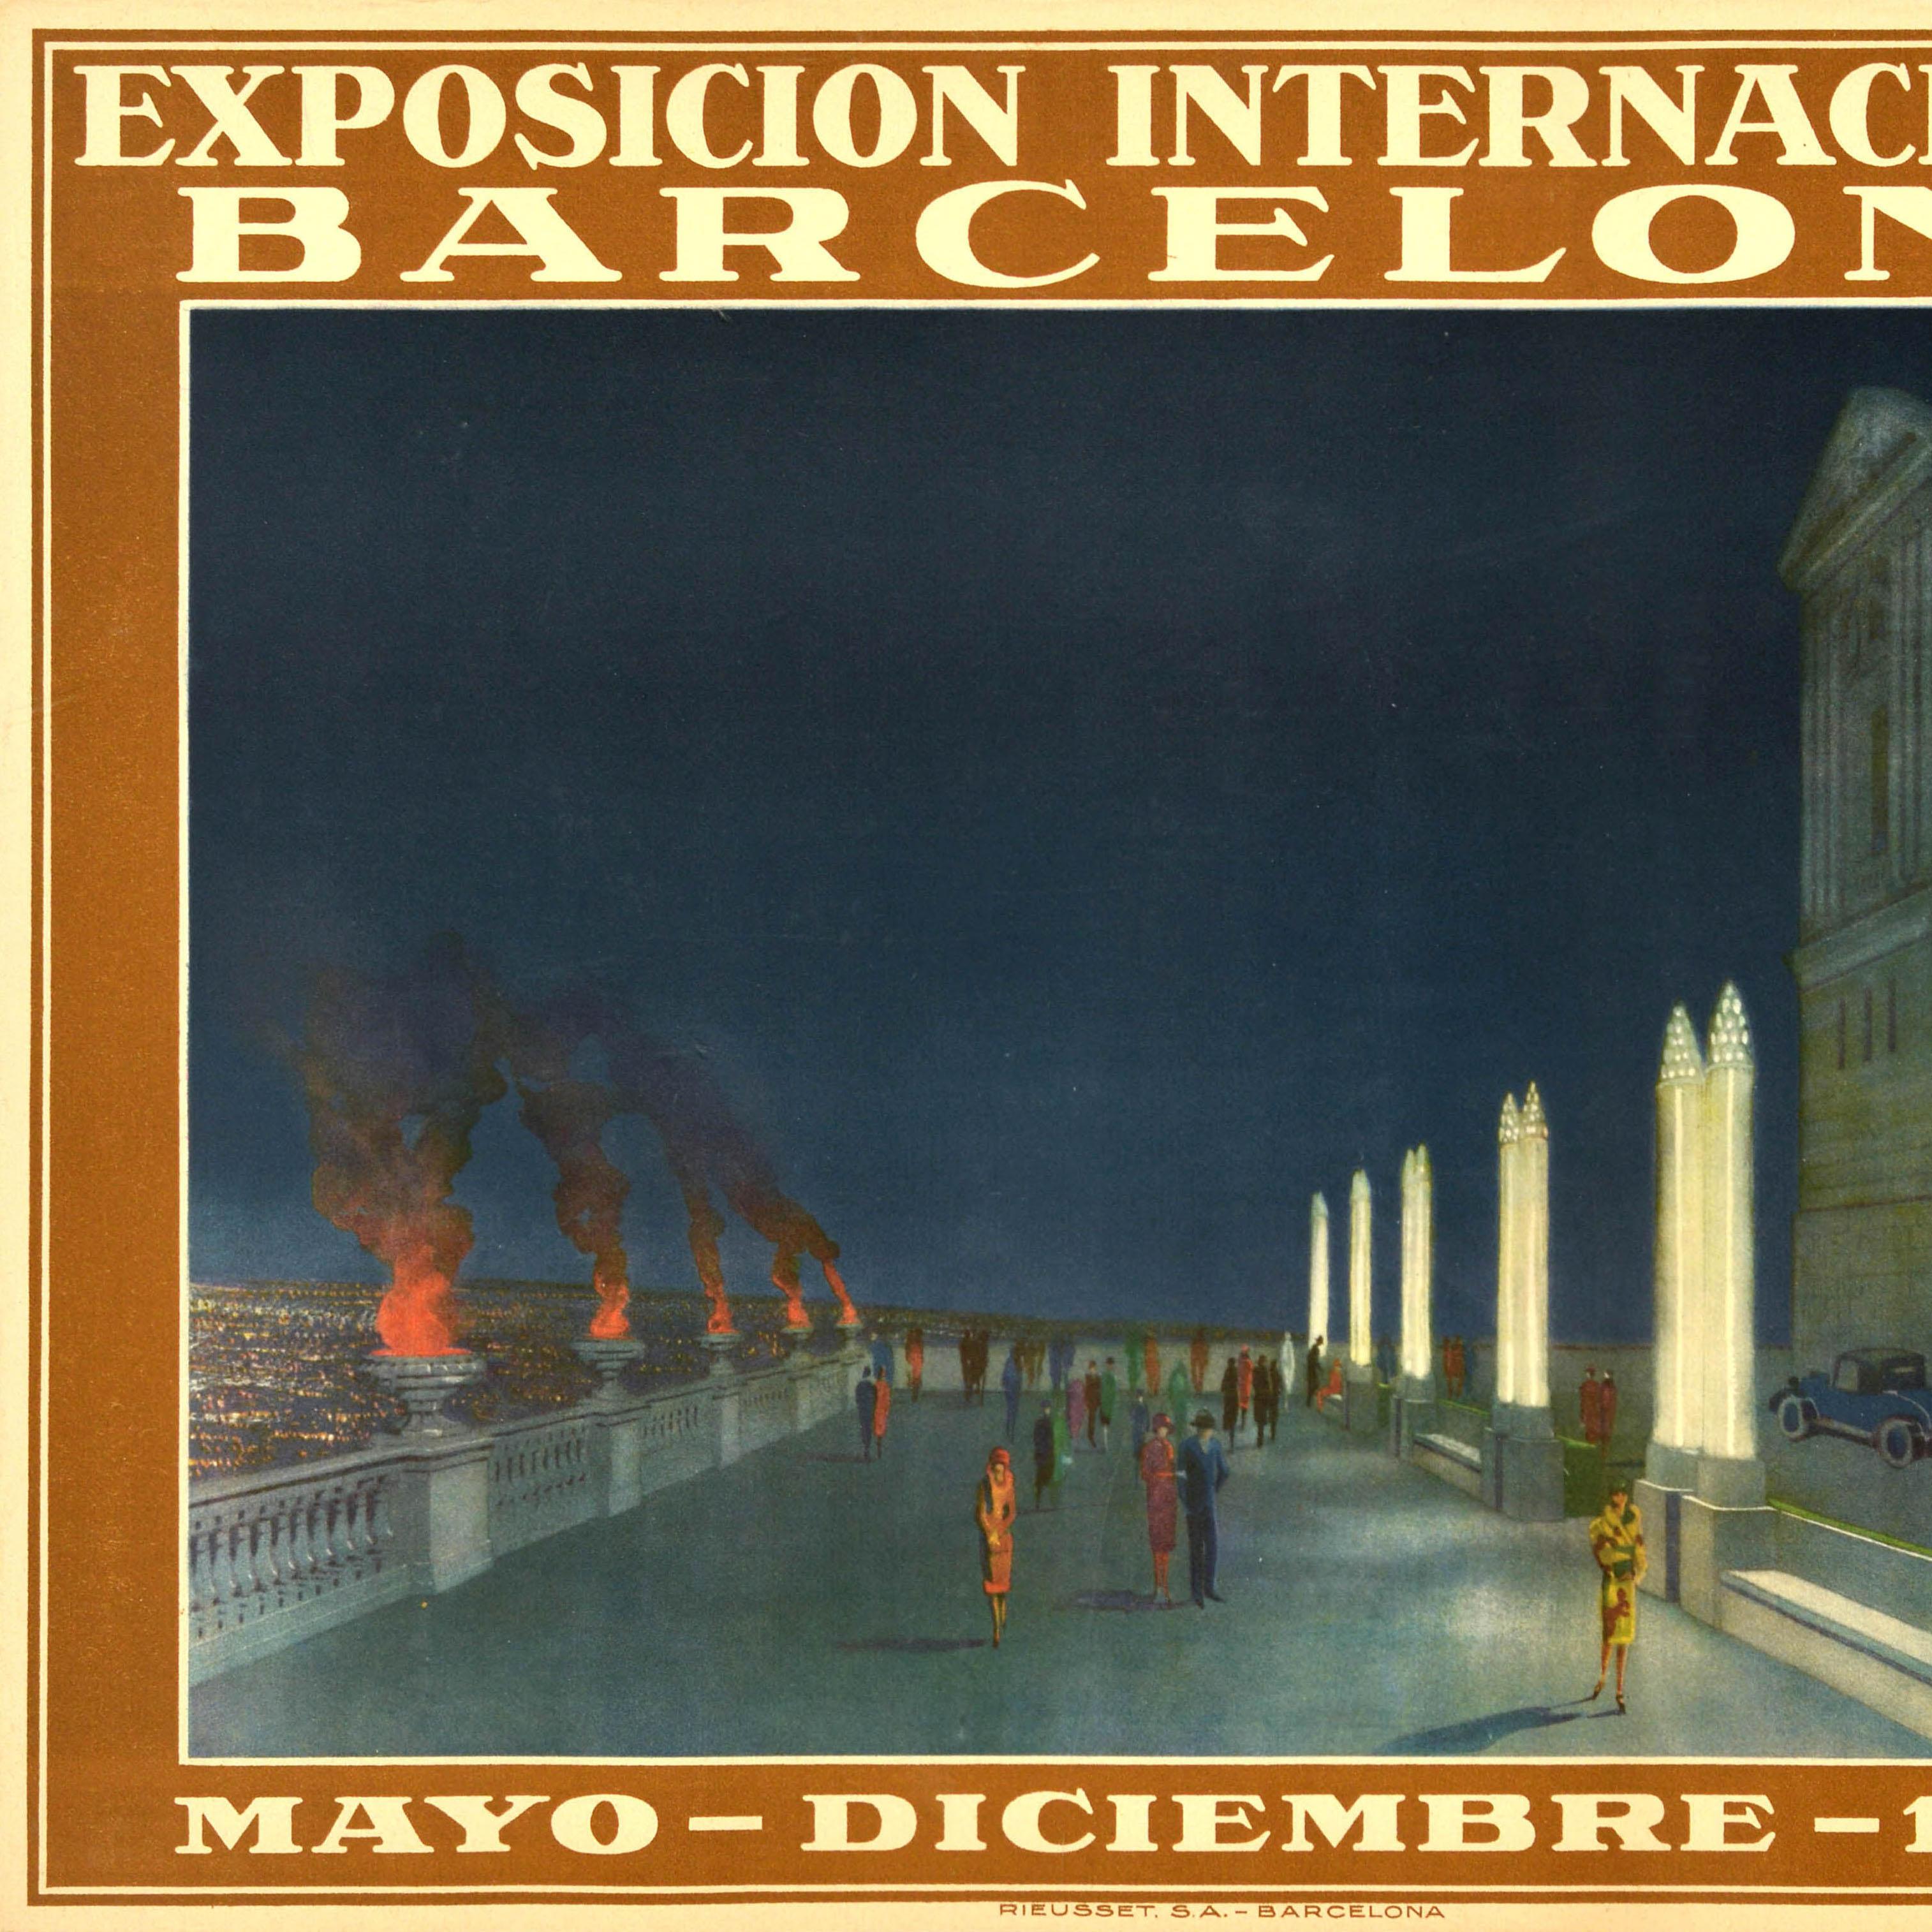 Affiche publicitaire originale de l'Exposition internationale de Barcelone de 1929 - Art déco Print par Unknown